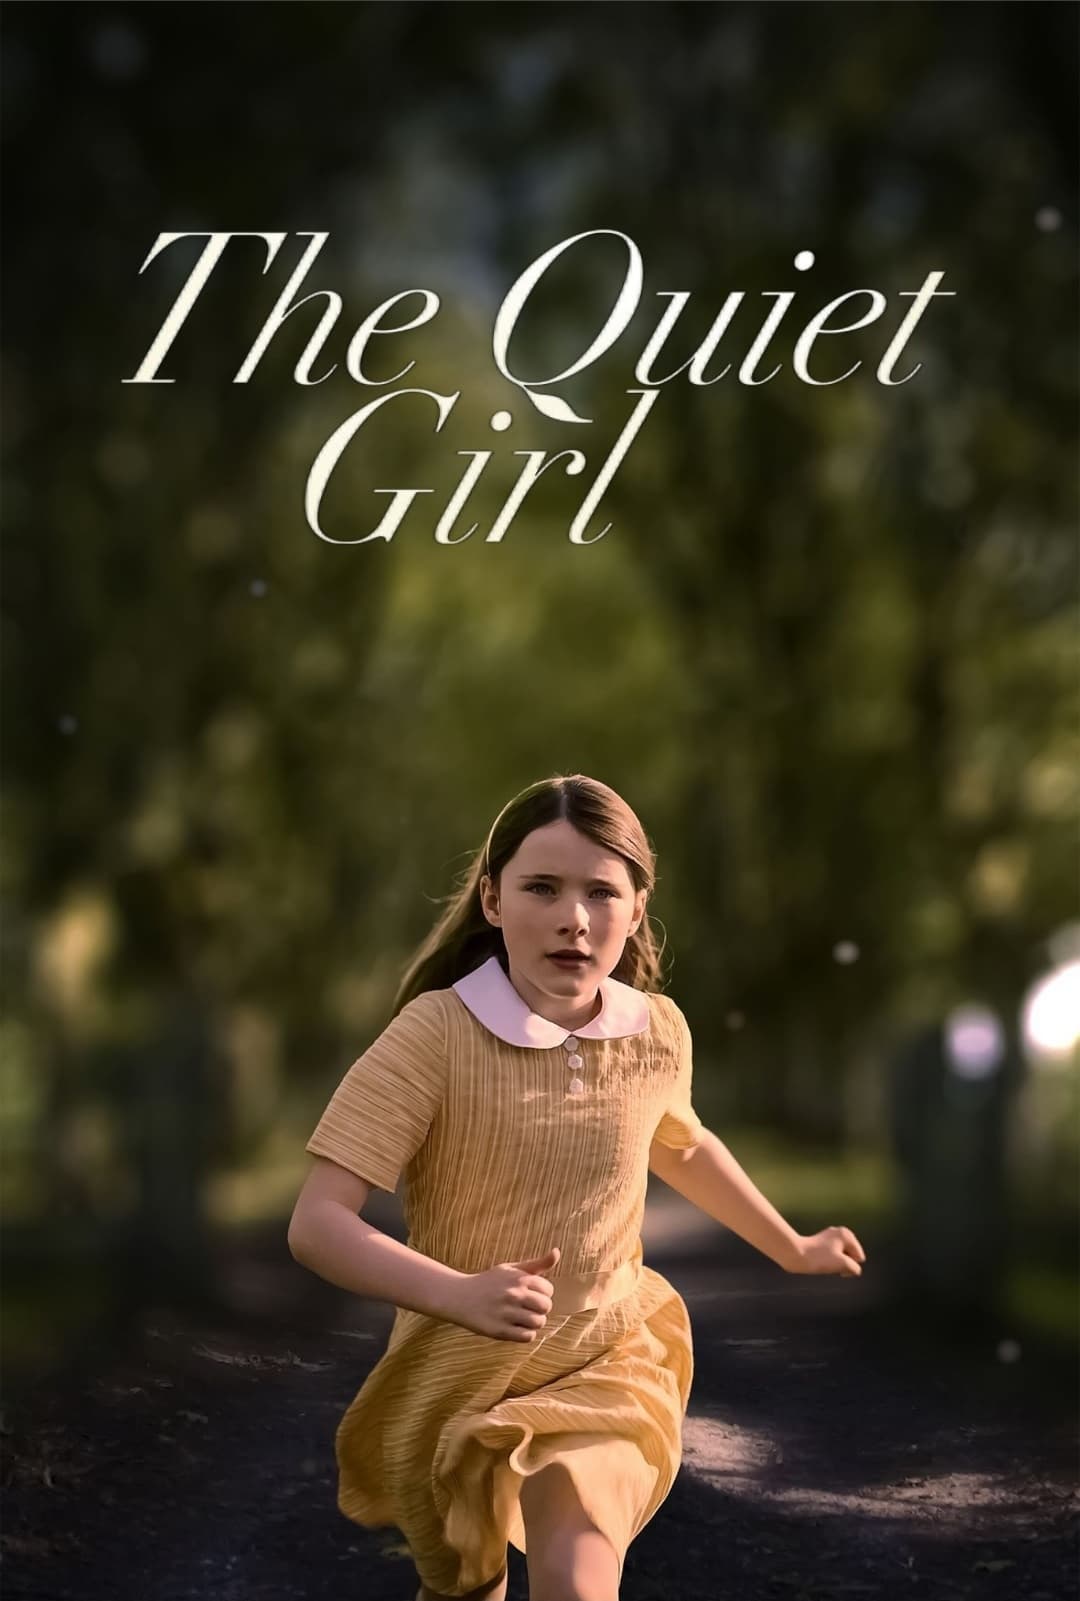 The Quiet Girl movie